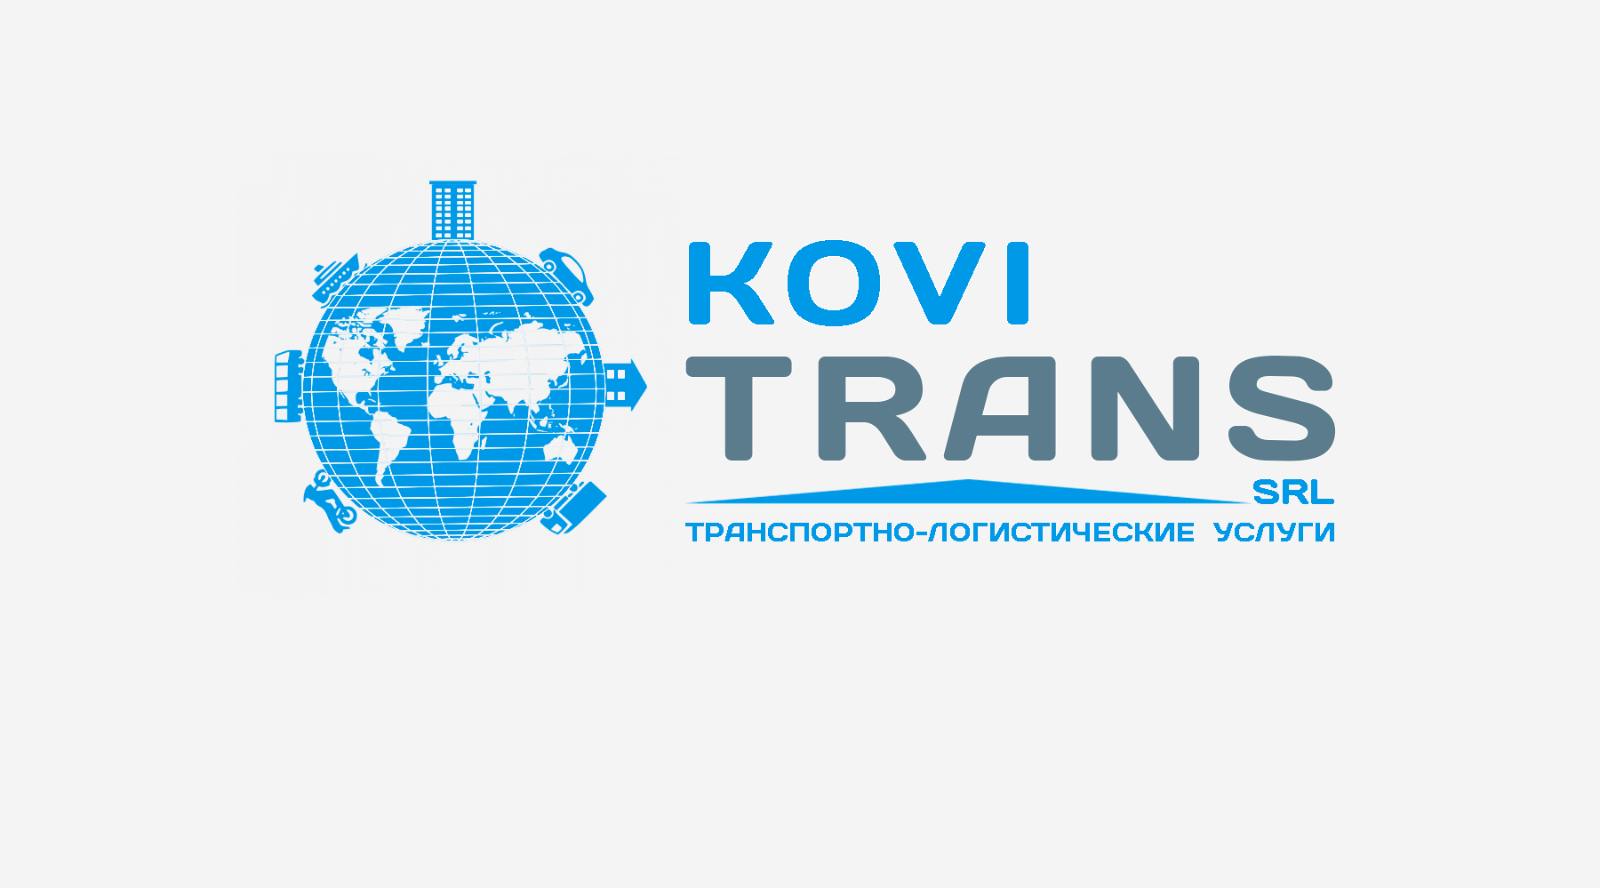 Transla. "Exim Trans" логотип. Логистические компании Молдовы. Логотип транспортно логистической компании. Kovi Trans SRL отзывы.